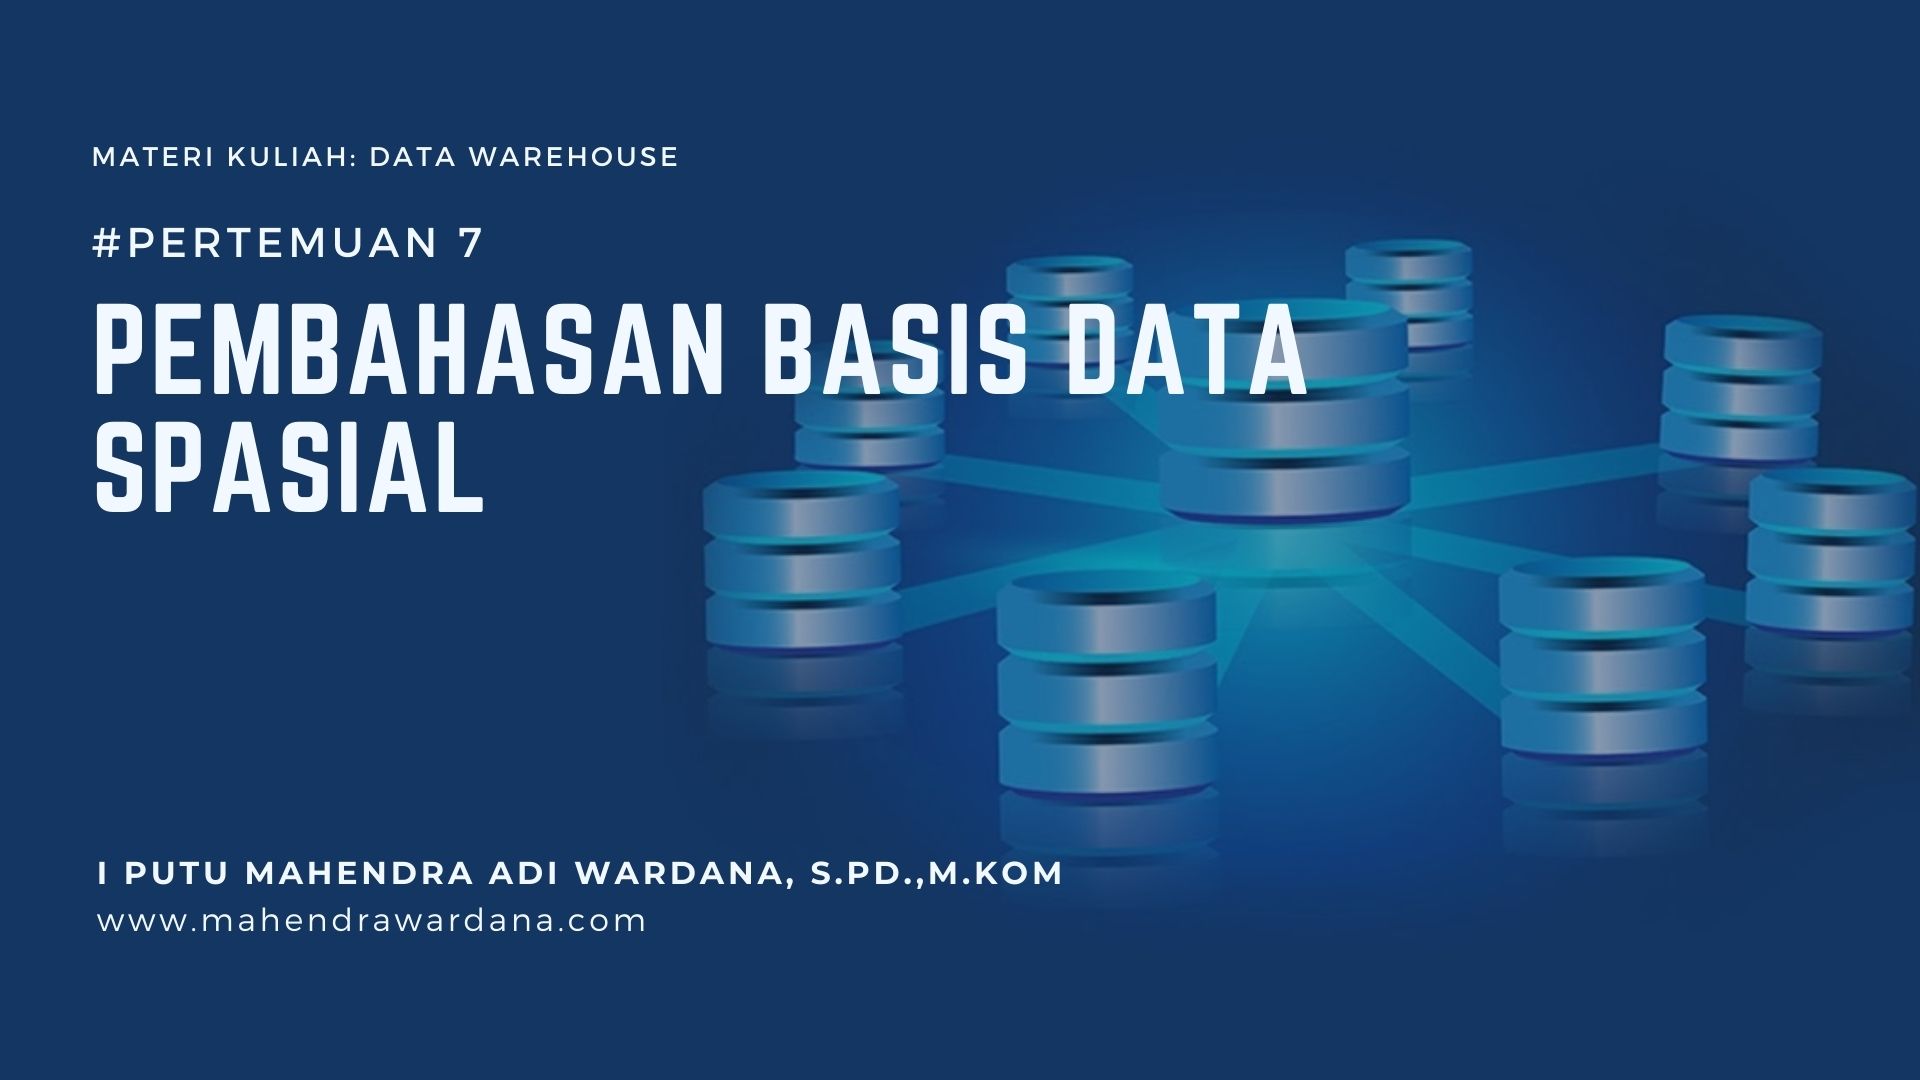 Pertemuan 7 - Pembahasan Basis Data Spasial